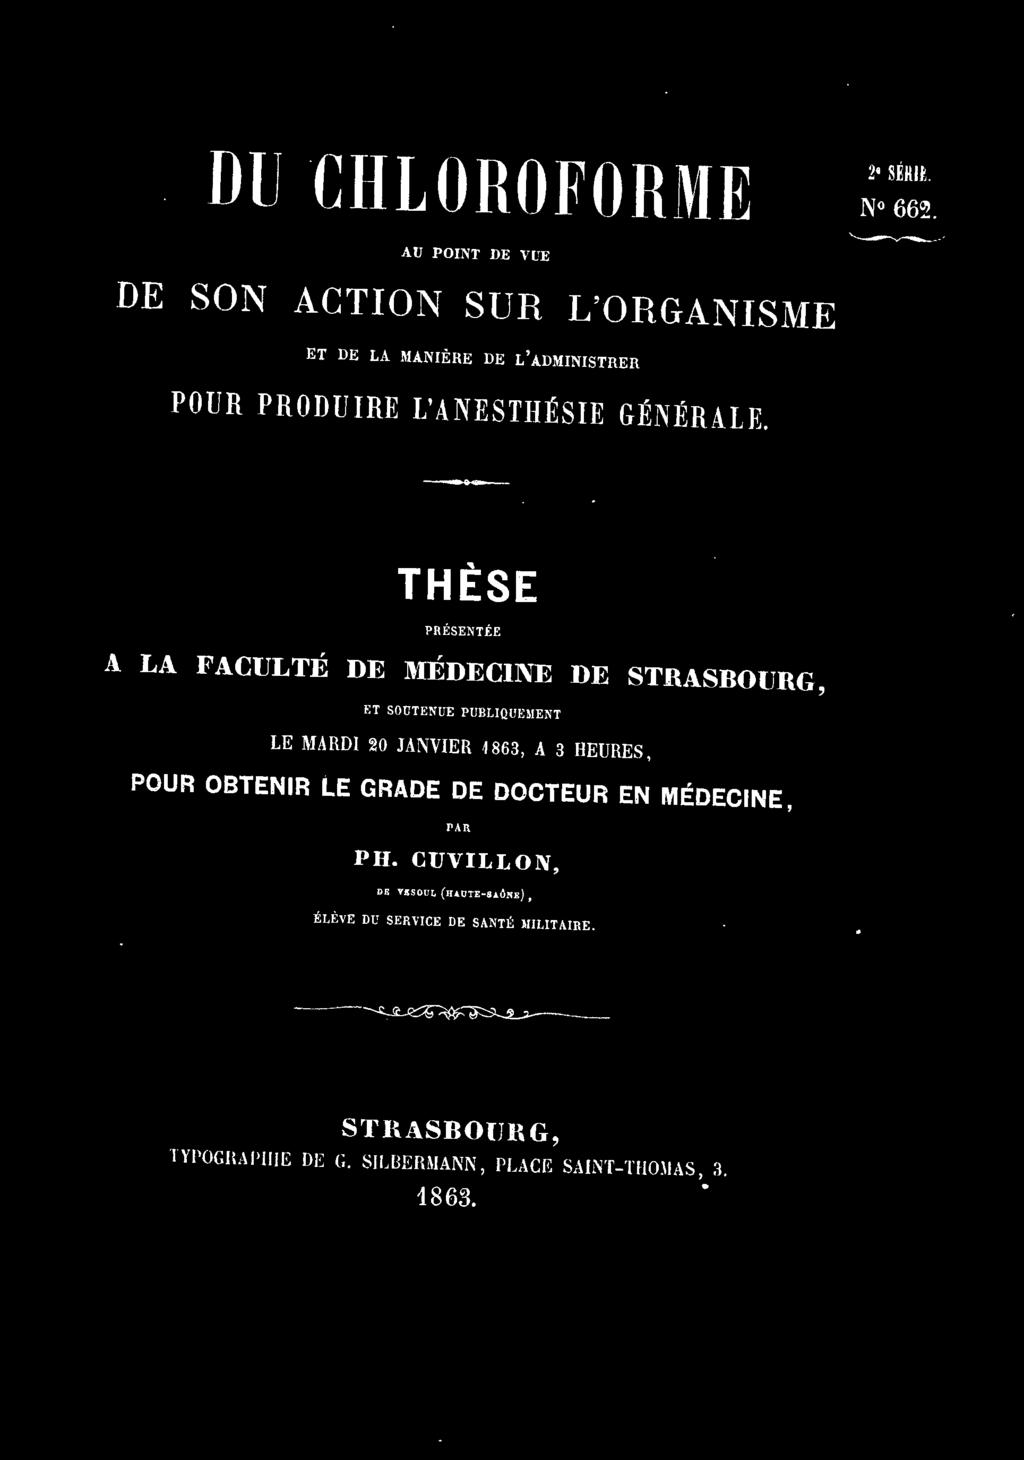 ENT te MAHDI 20 JANVIEH 1863, A 3 HEUHES, POUR OBTENIR LE GRADE DE DOCTEUR EN